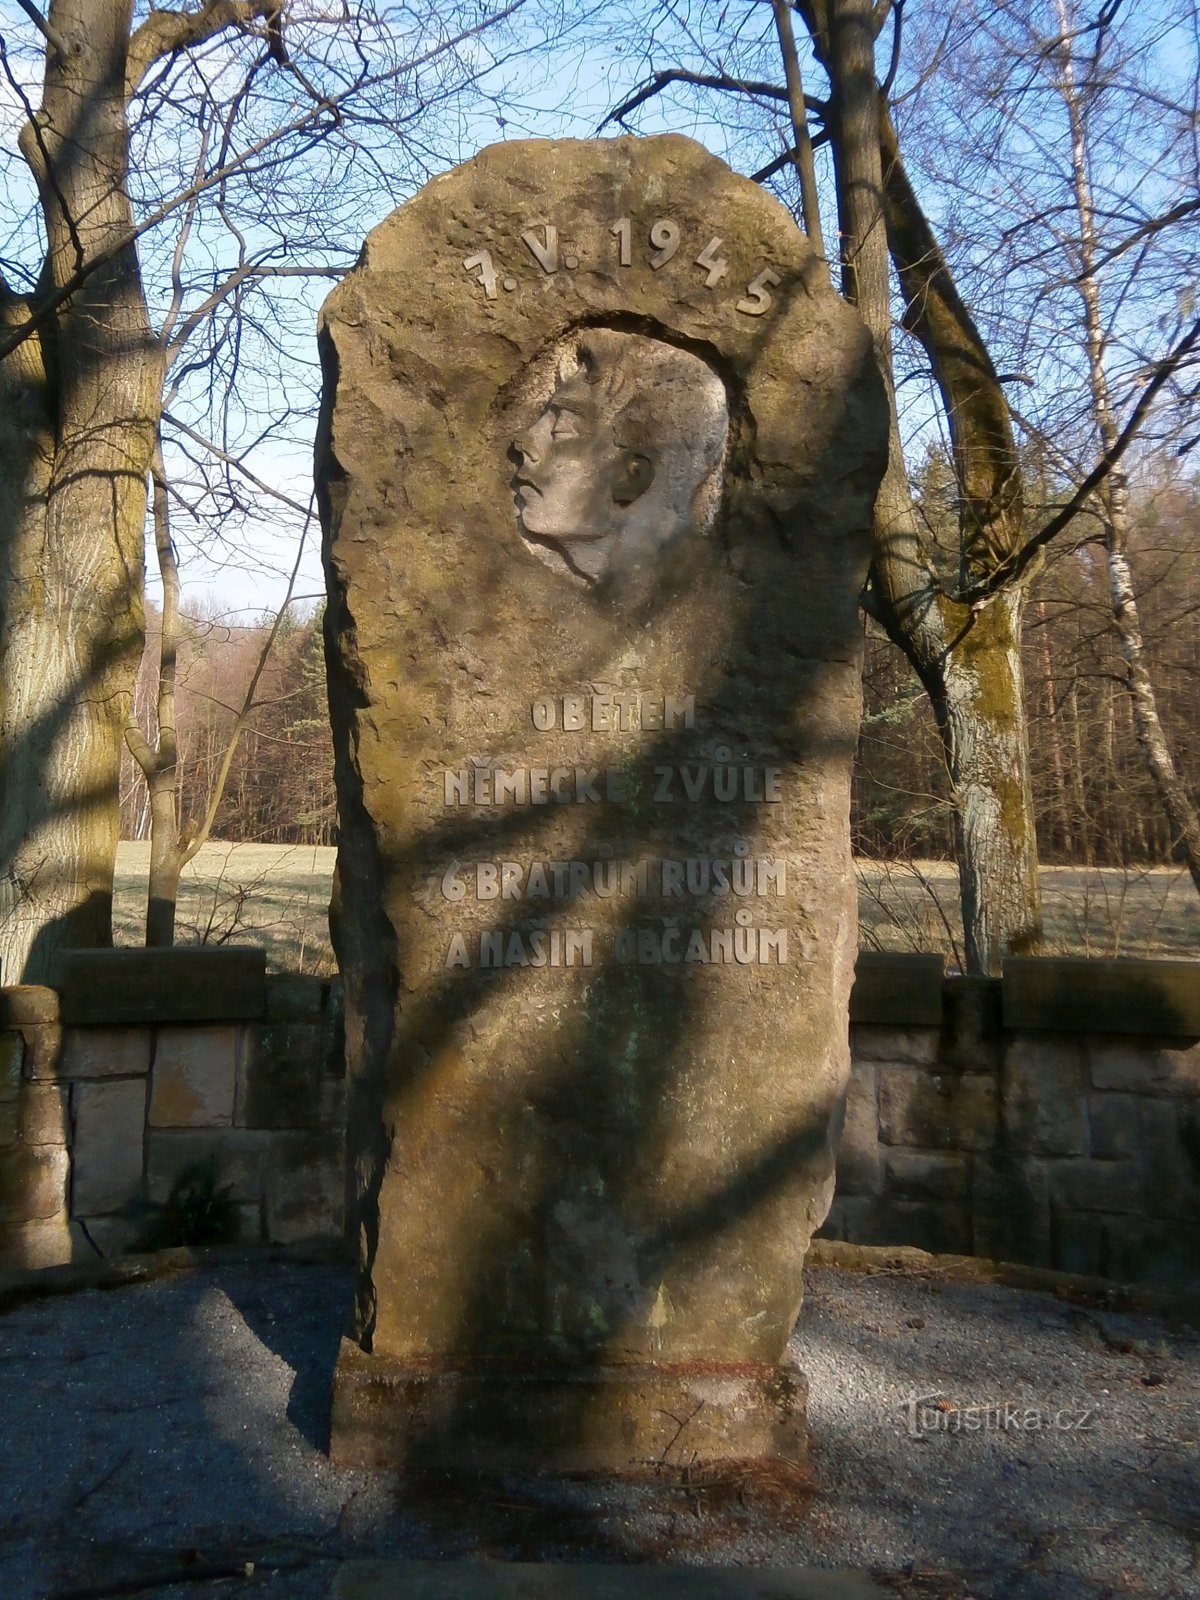 第二次世界大戦の犠牲者の記念碑 (Vysoká nad Labem、2 年 24.3.2017 月 XNUMX 日)